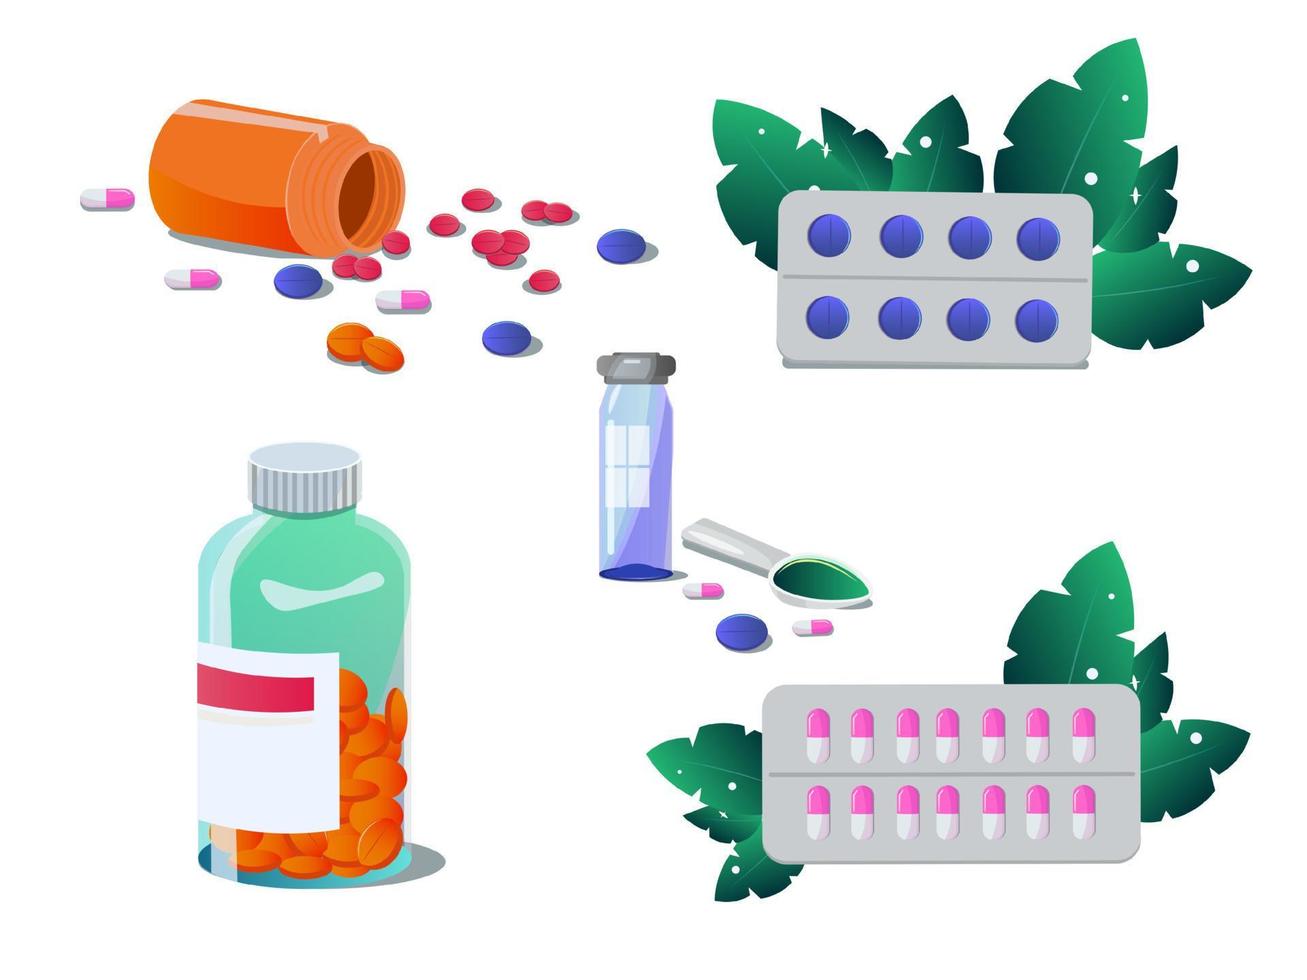 uppsättning av vektor piller och kapslar. tabletter i blåsor, smärtstillande medicin, antibiotika, vitaminer och aspirin, traditionell medicin. apotek och läkemedel symboler. medicinsk illustration på vit bakgrund.